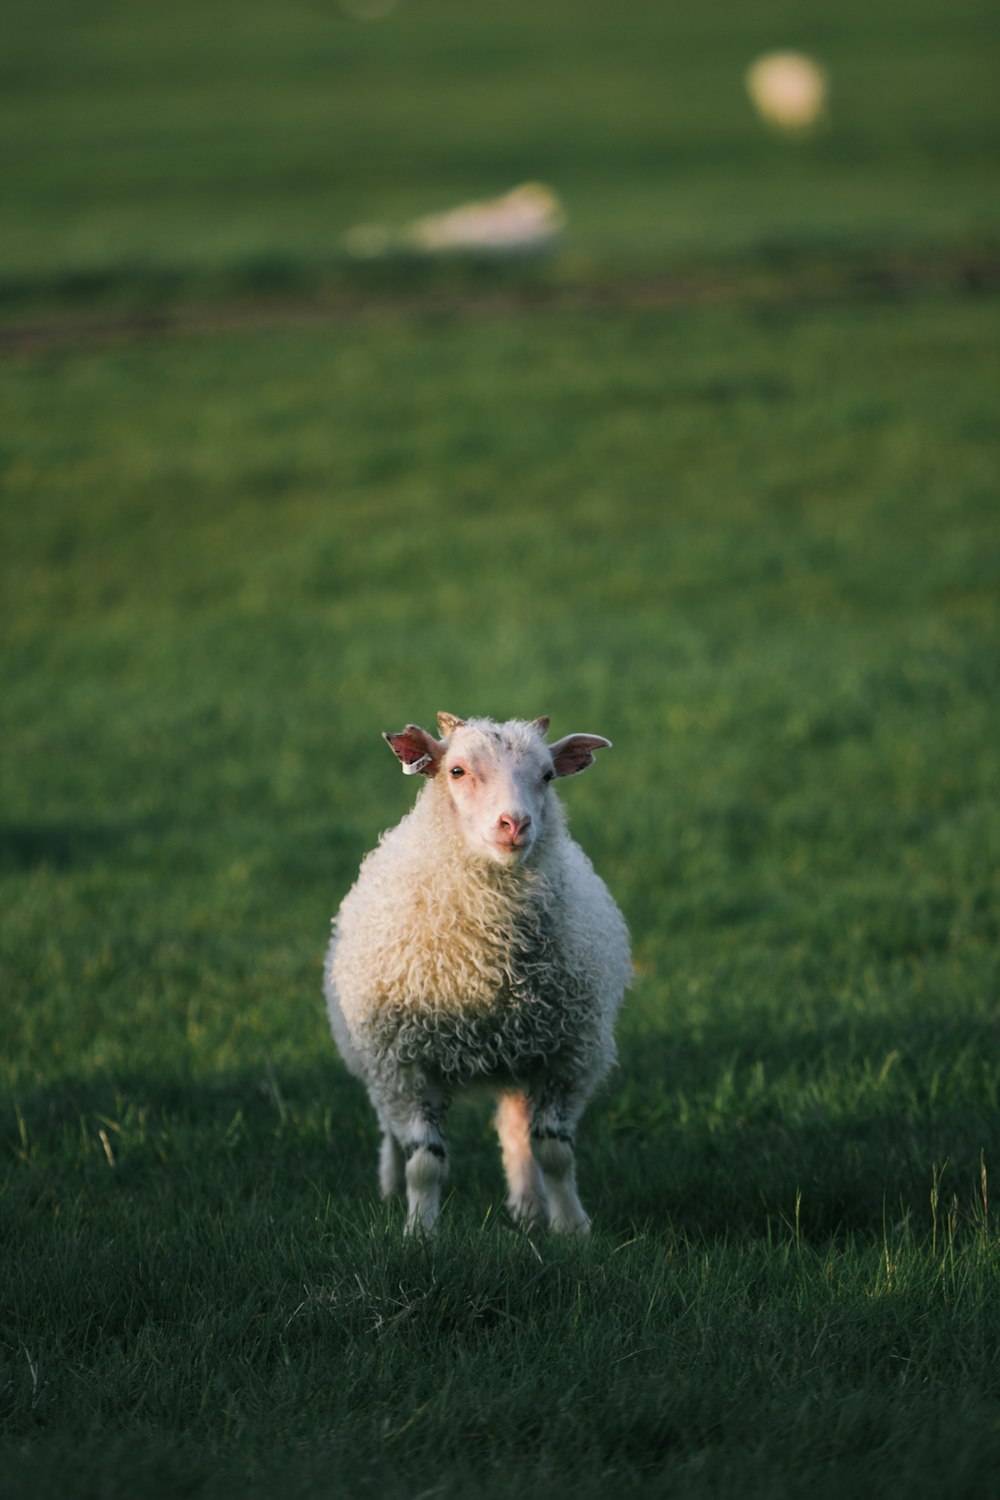 Una oveja parada en un campo cubierto de hierba mirando a la cámara